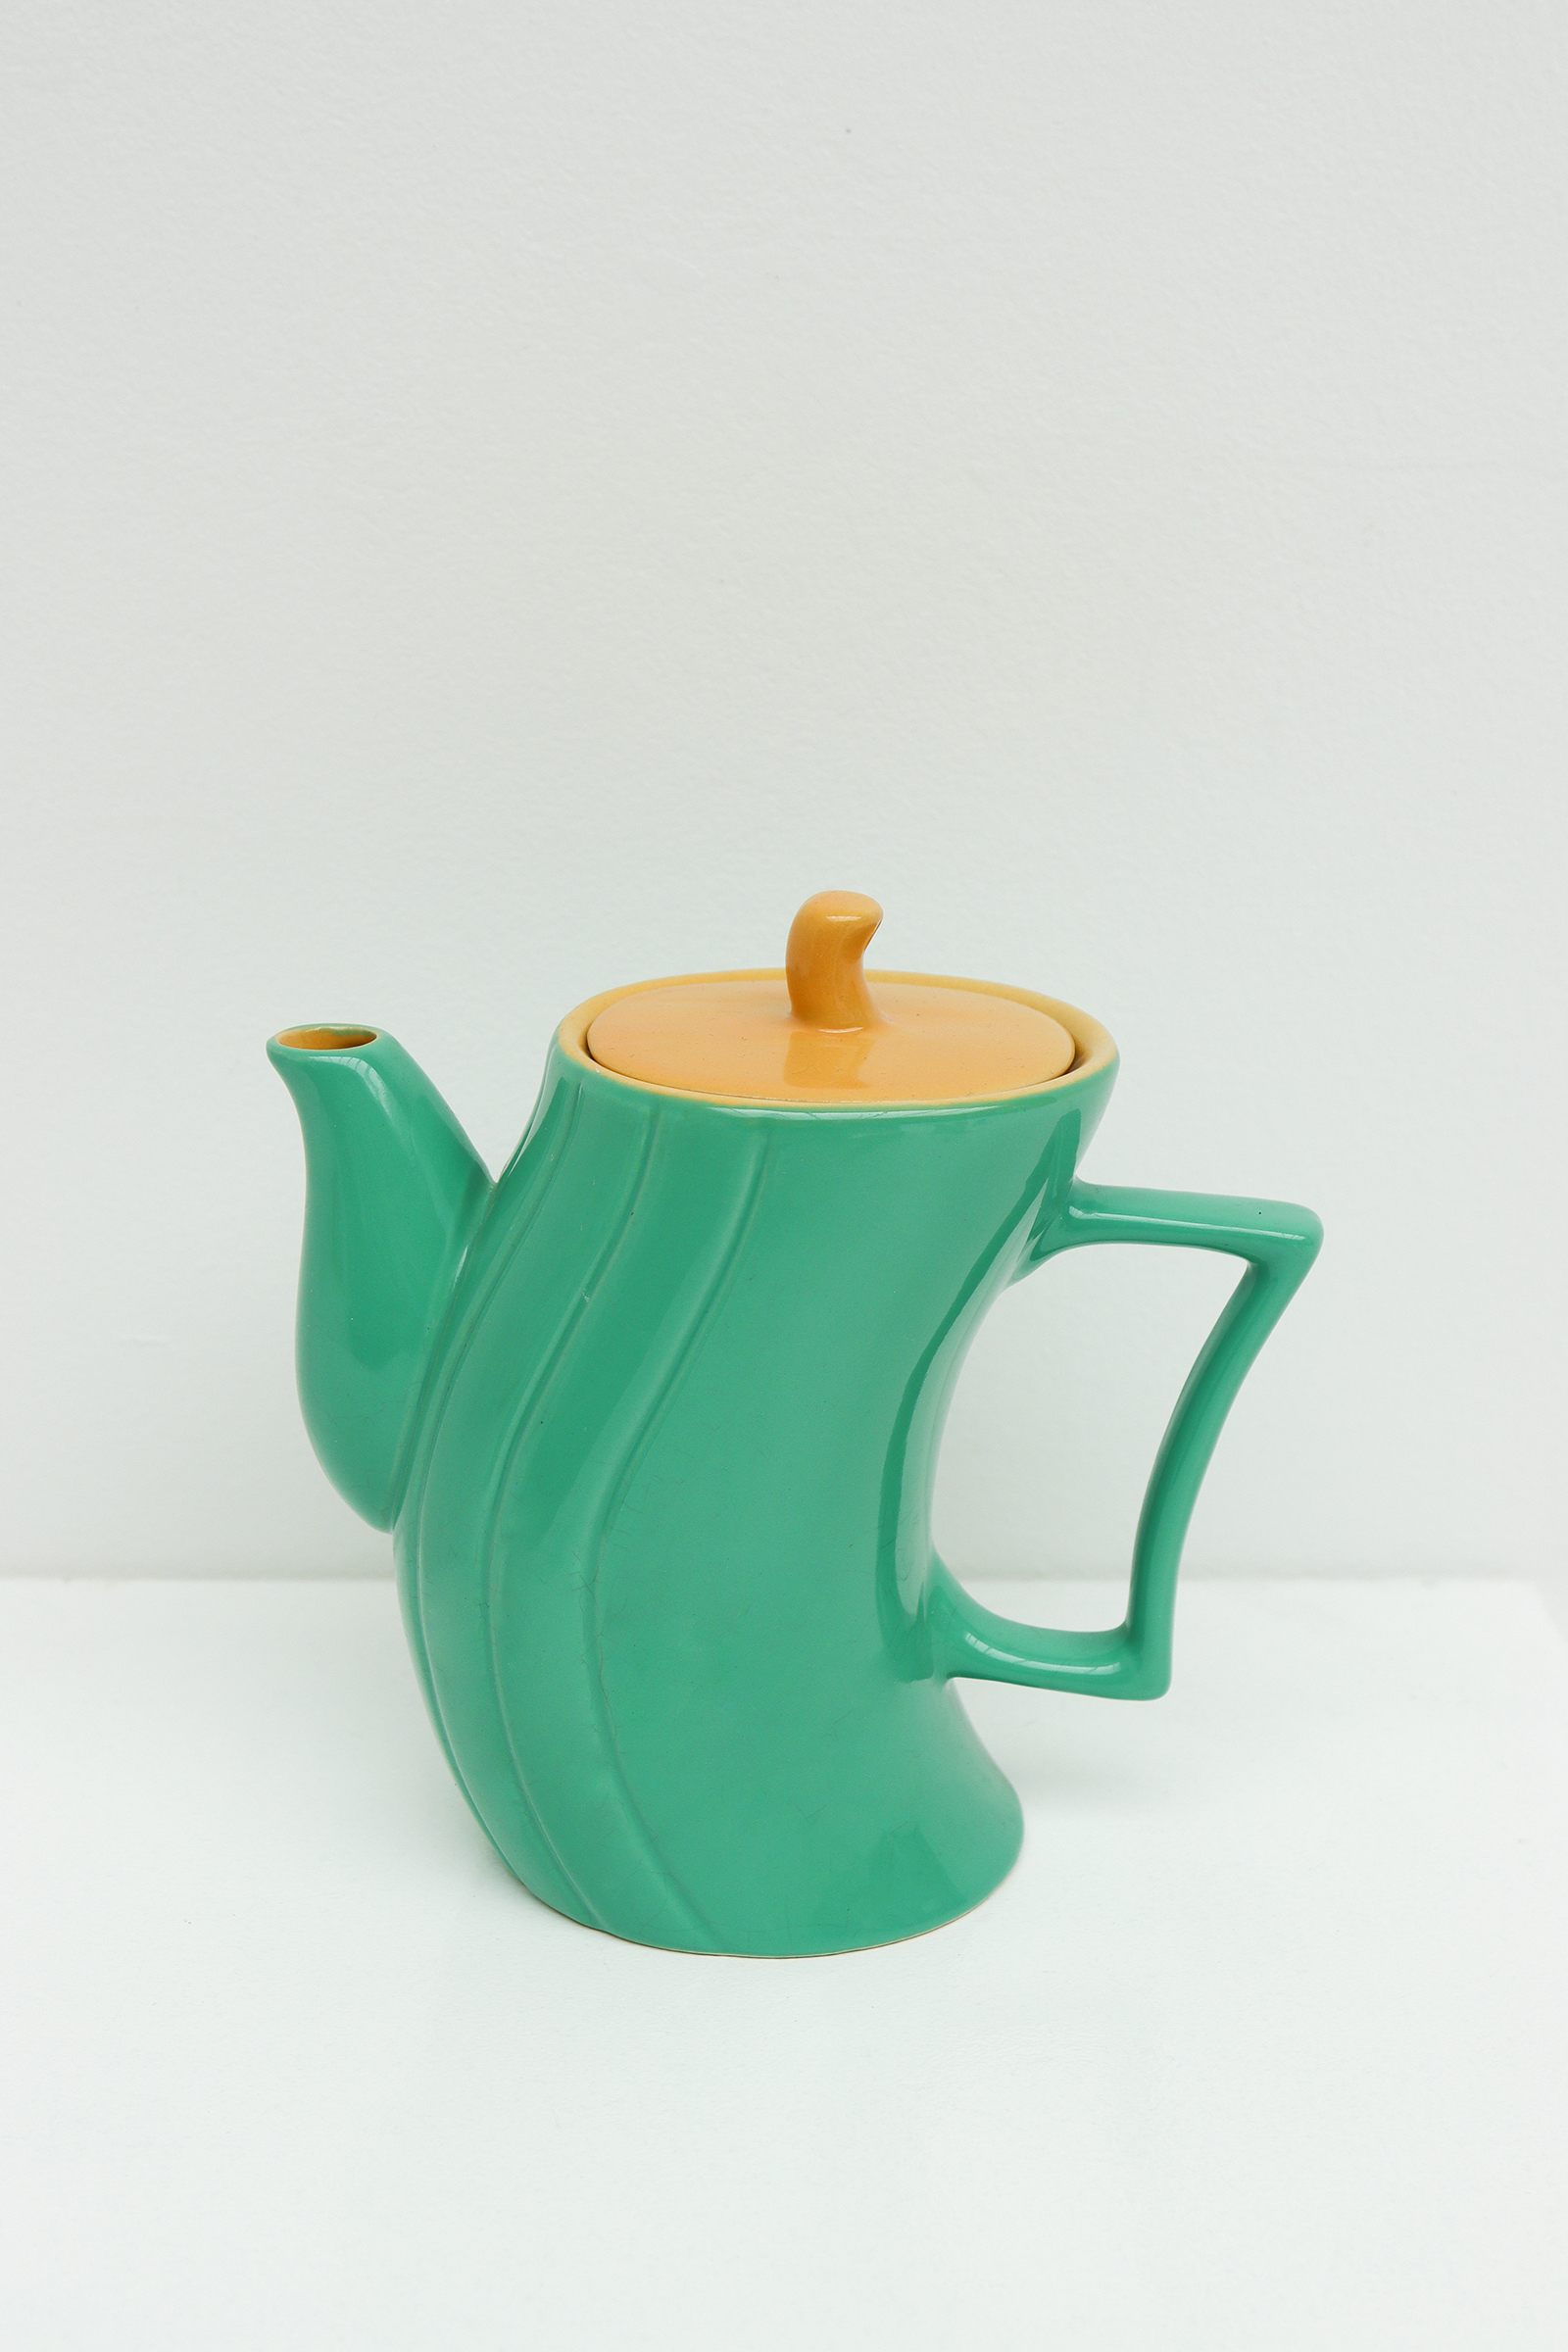 Ceramic Italian coffee Set by Massimo Iosa Ghini for Naj Oleari, 1985image 3